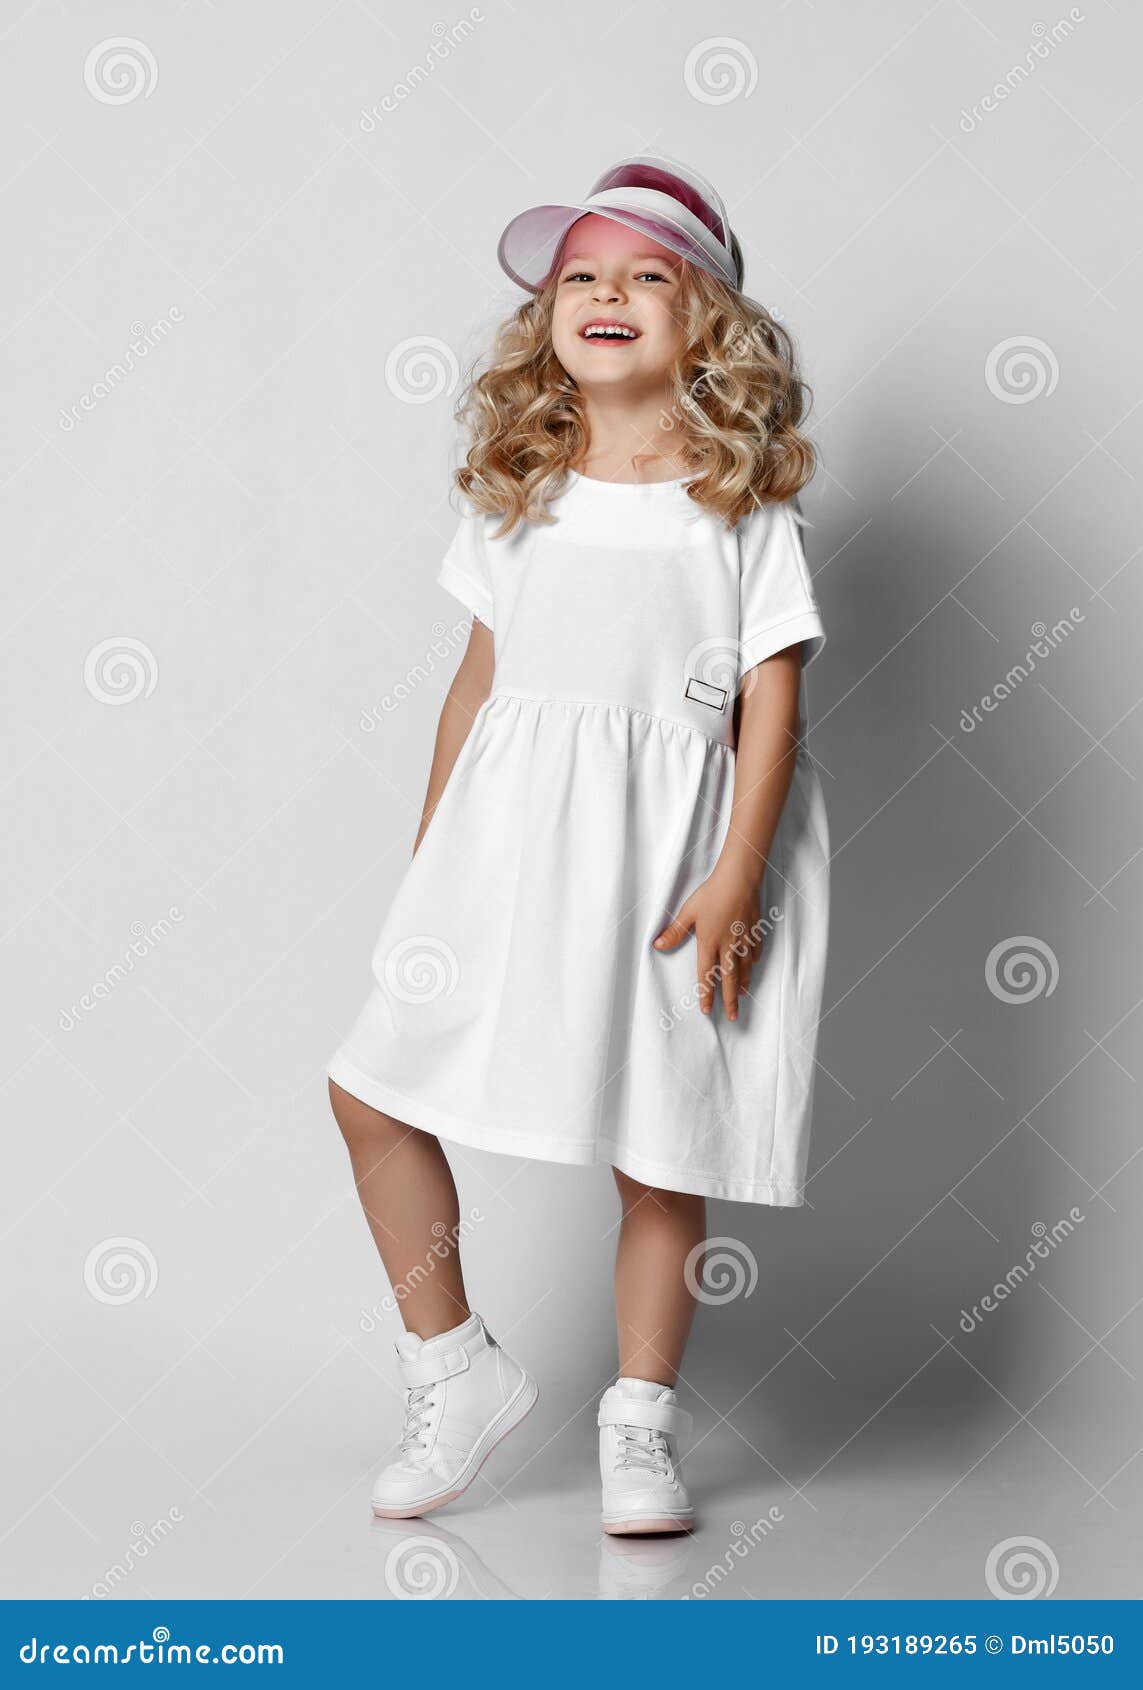 Princesa De Rubia Rubia Rubia Y Rizada Con Vestido Blanco Casual Y Zapatillas De Tenis De Pie Sobre Una Pared Gris Imagen de archivo - Imagen de peinado, feliz: 193189265